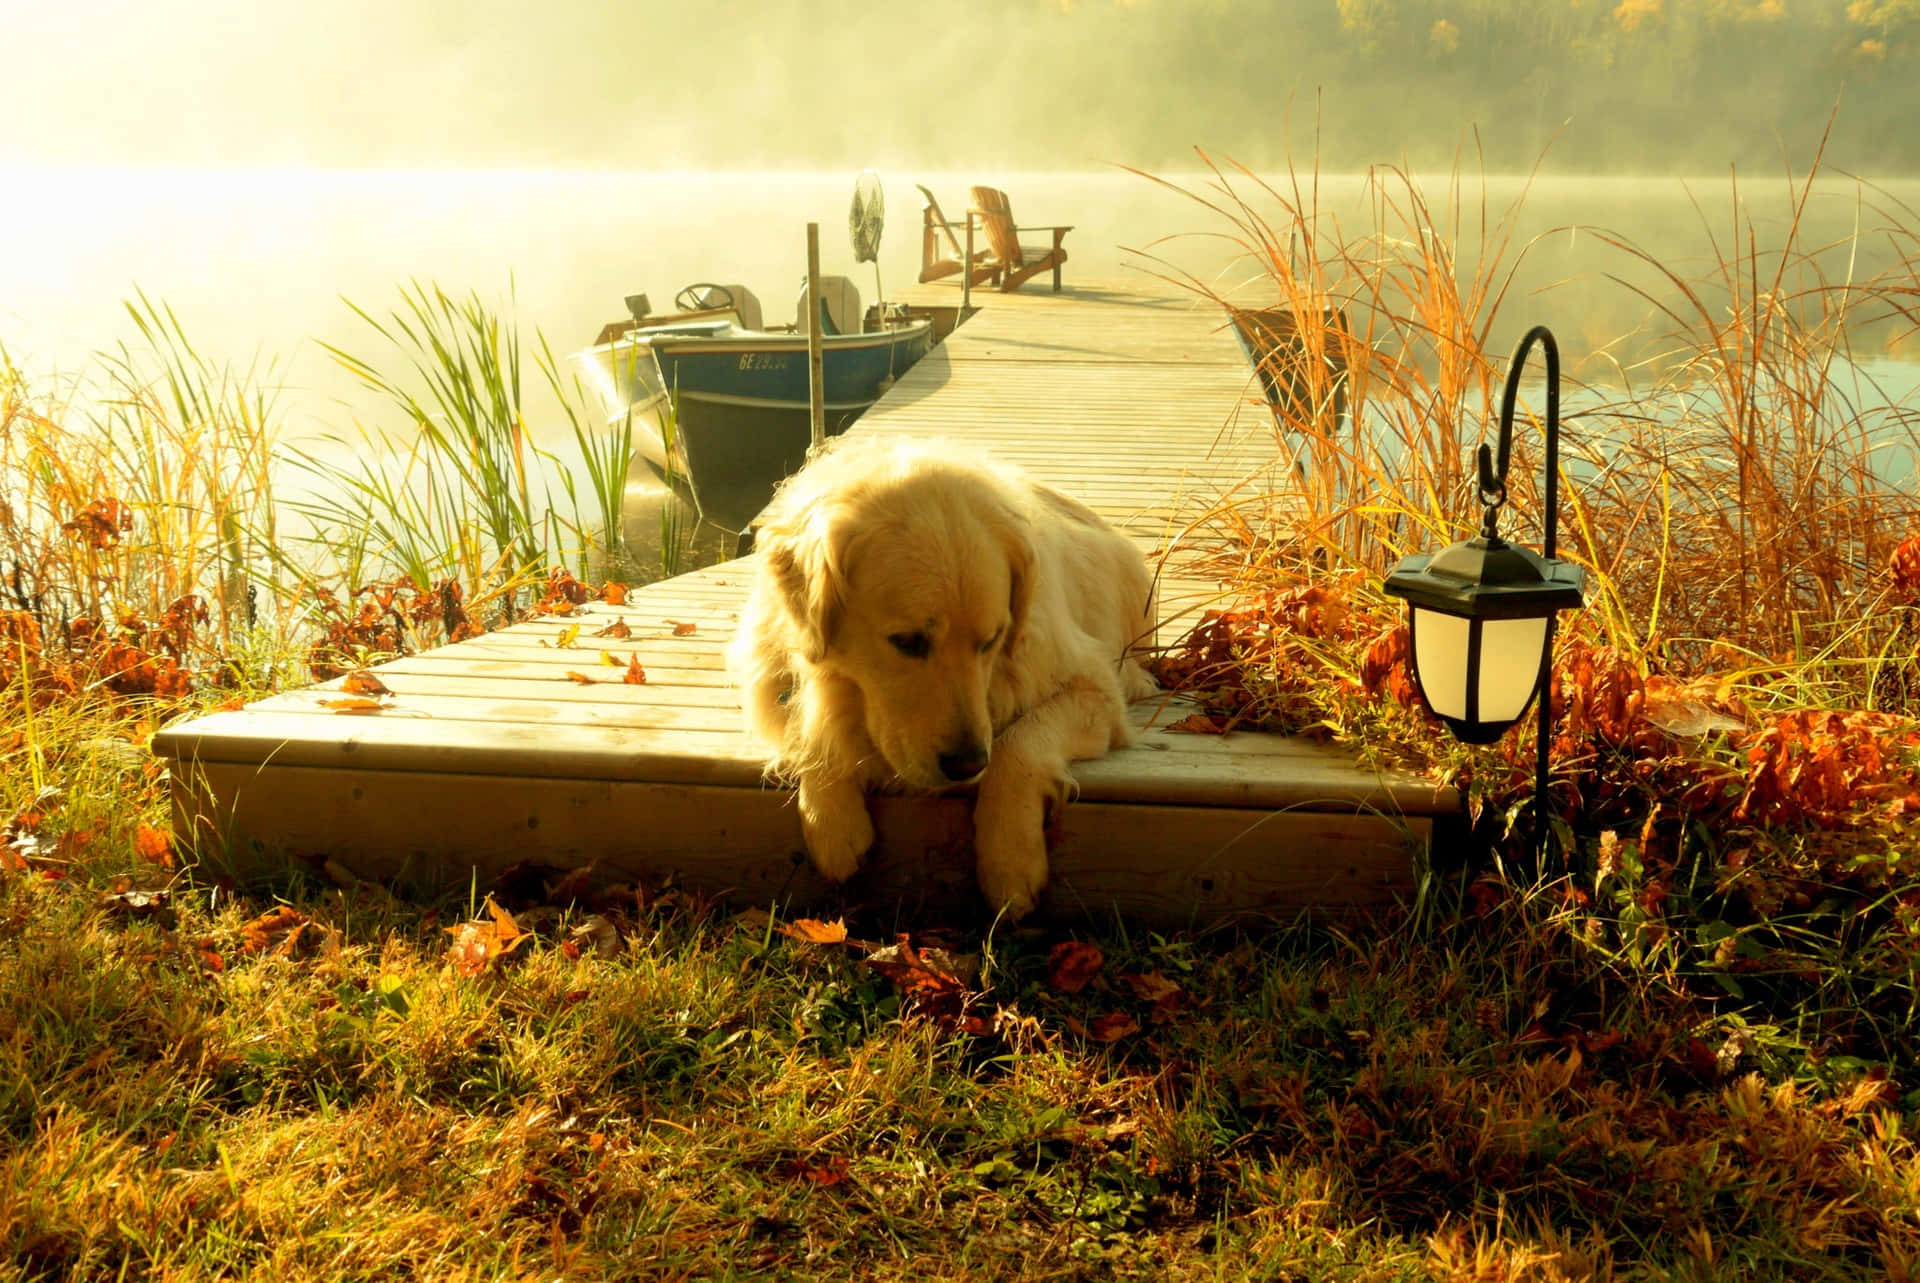 Adorable Golden Retriever puppy exploring outdoors